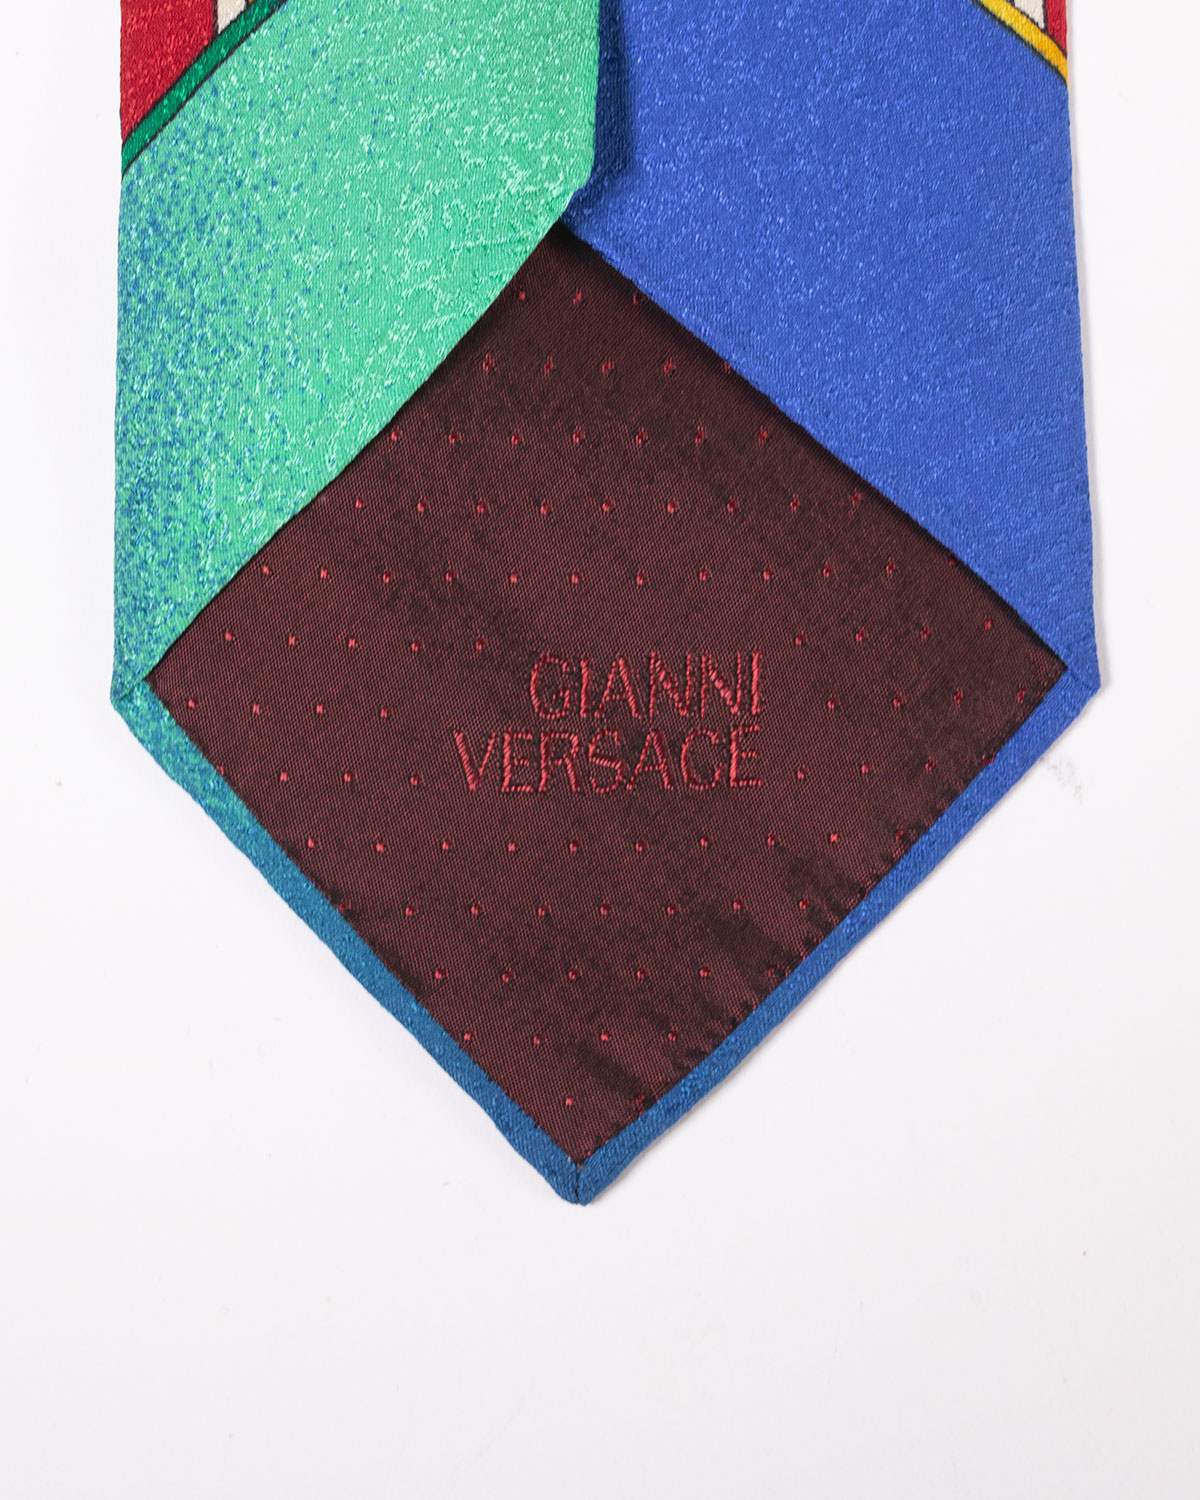 Gianni Versace - Cravatta anni 2000